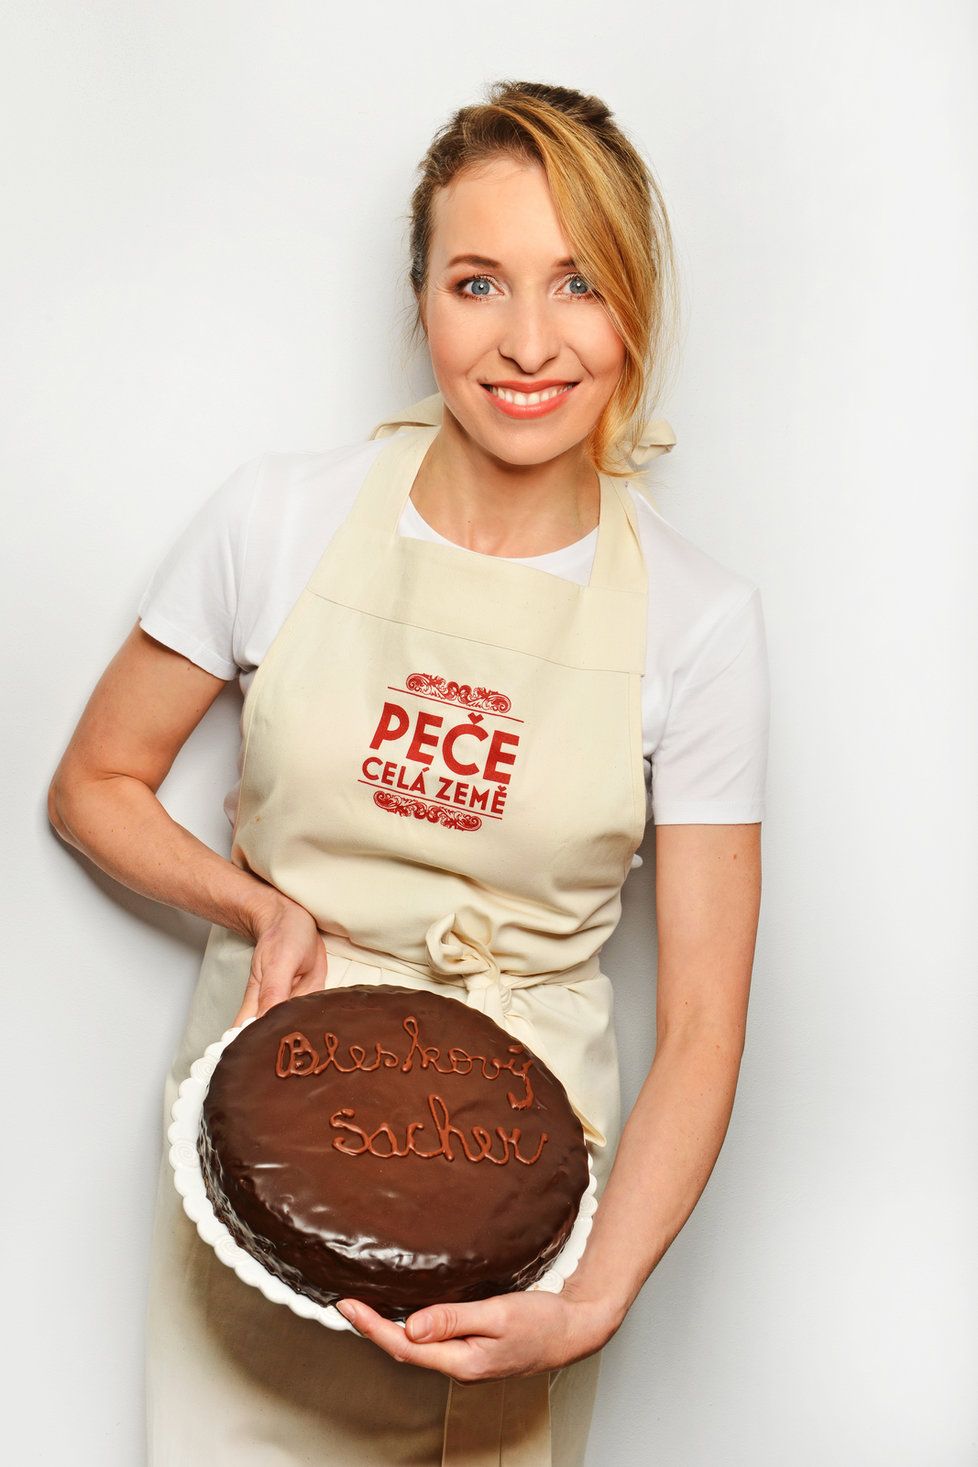 Tereza Bebarová kývla na porotcování v kuchařské show Peče celá země.